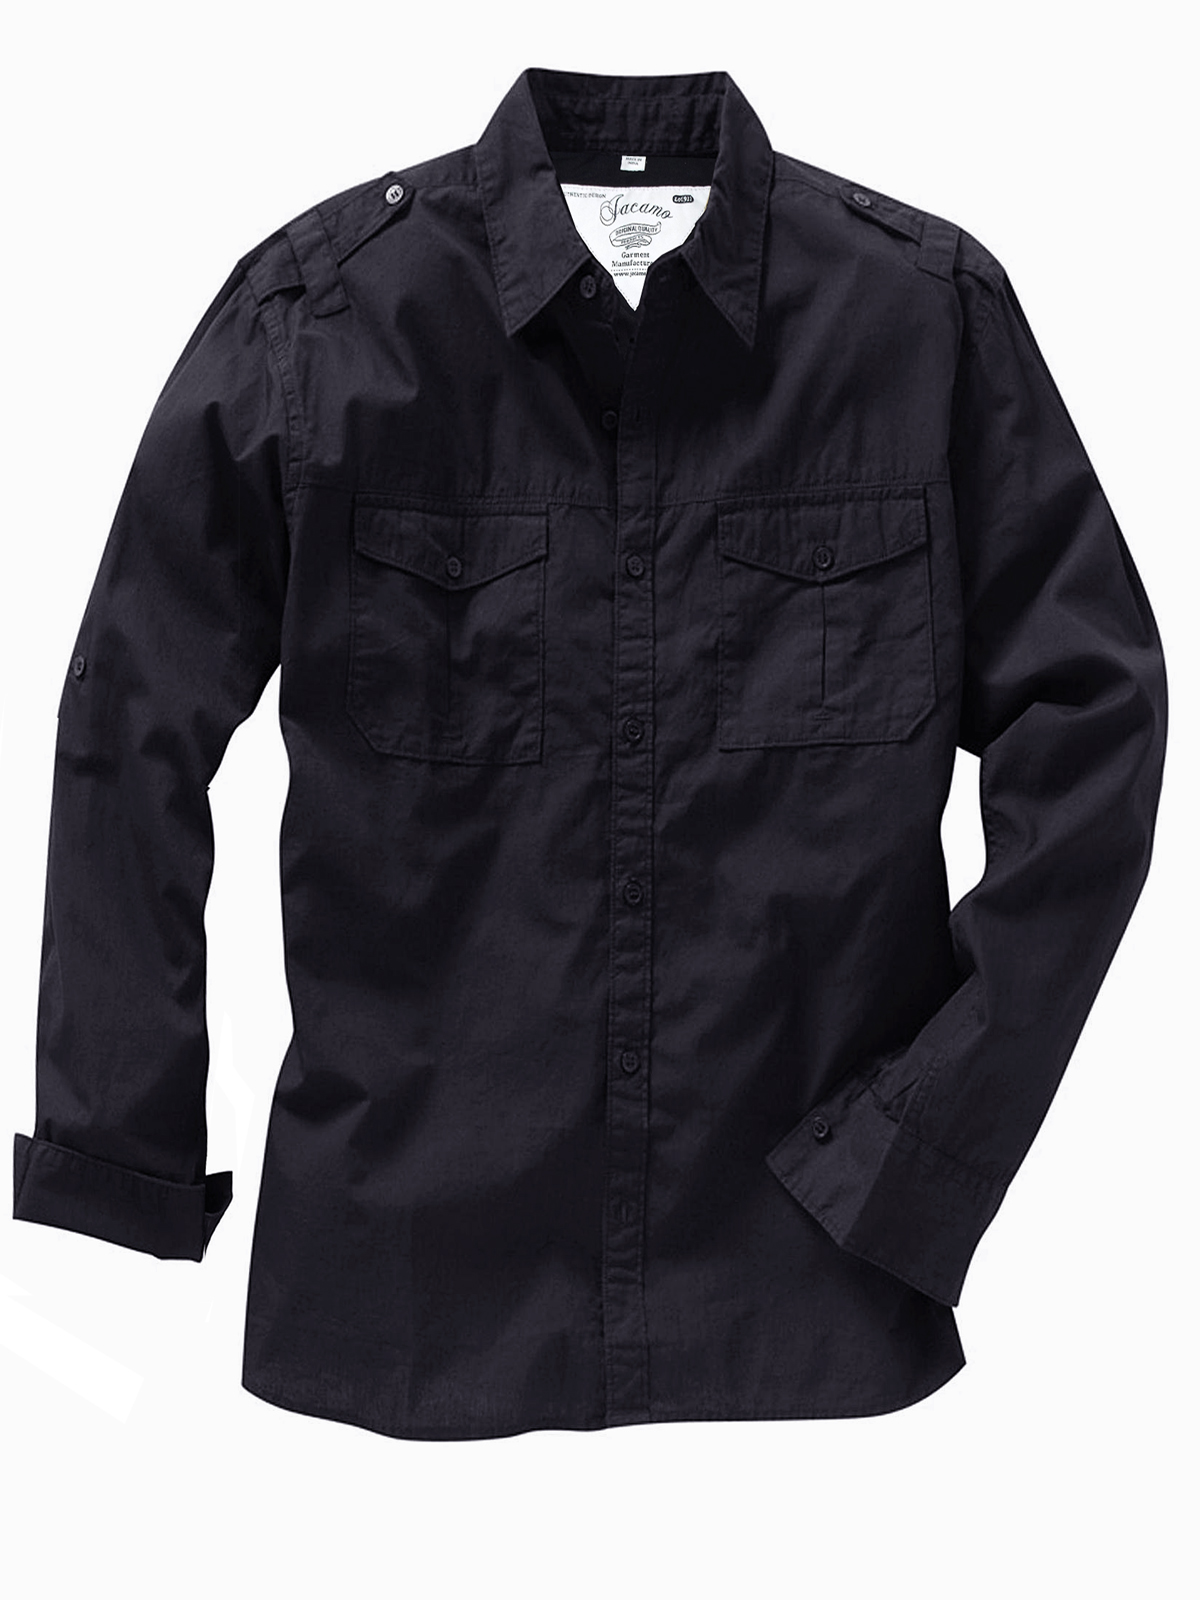 Jacamo - - Jacamo BLACK Mens Pure Cotton Military Shirt - Plus Size